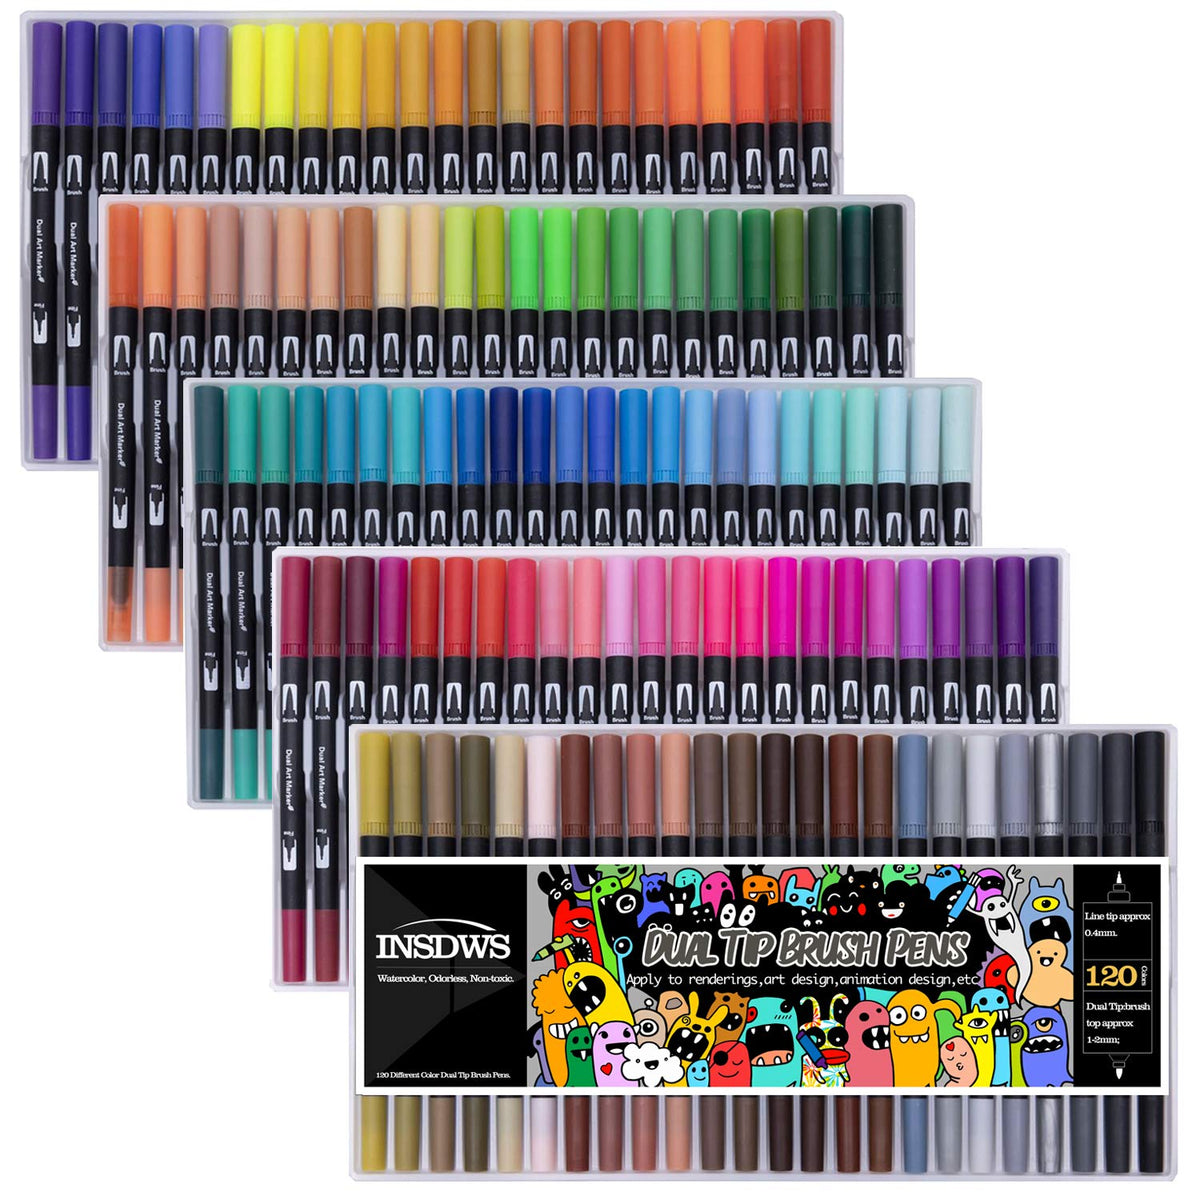 Hethrone Colors Dual Tip Brush Pens 120 Colors Brush Pen